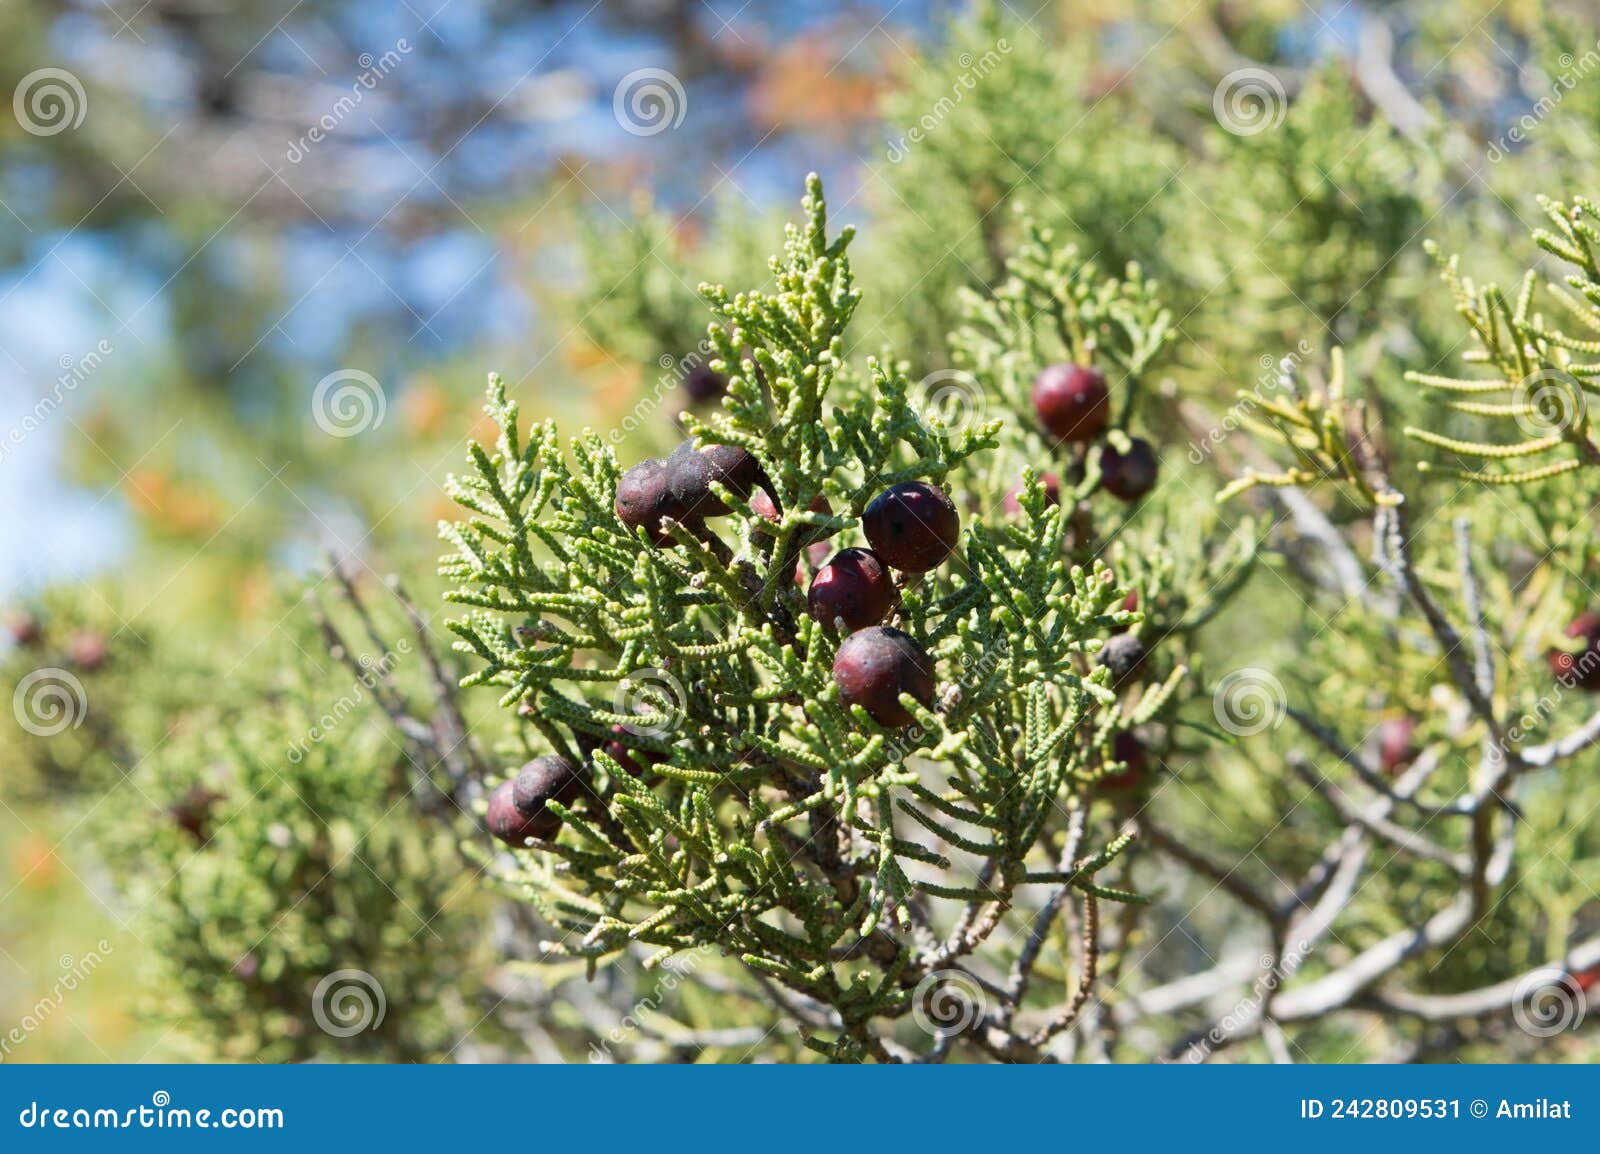 mediterranean shrub juniperus phoenicea